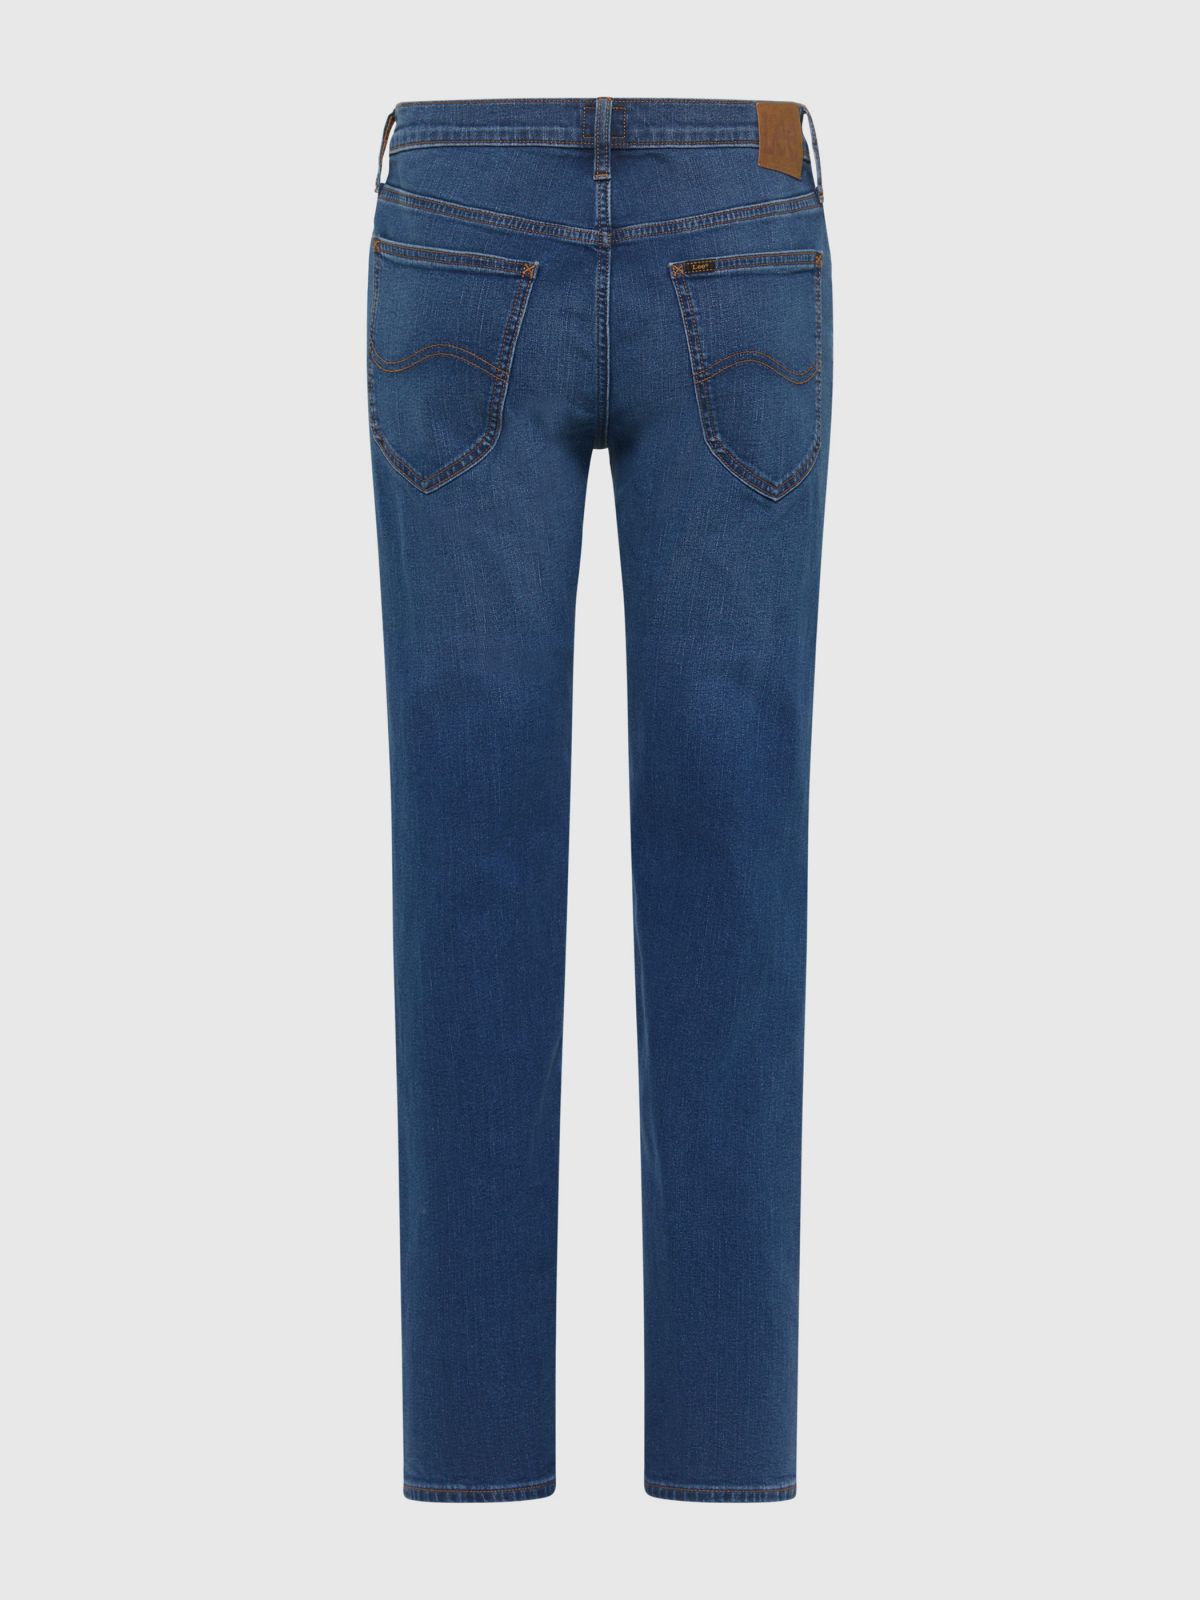  מכנסי ג'ינס בגזרה ישרה / גברים של LEE